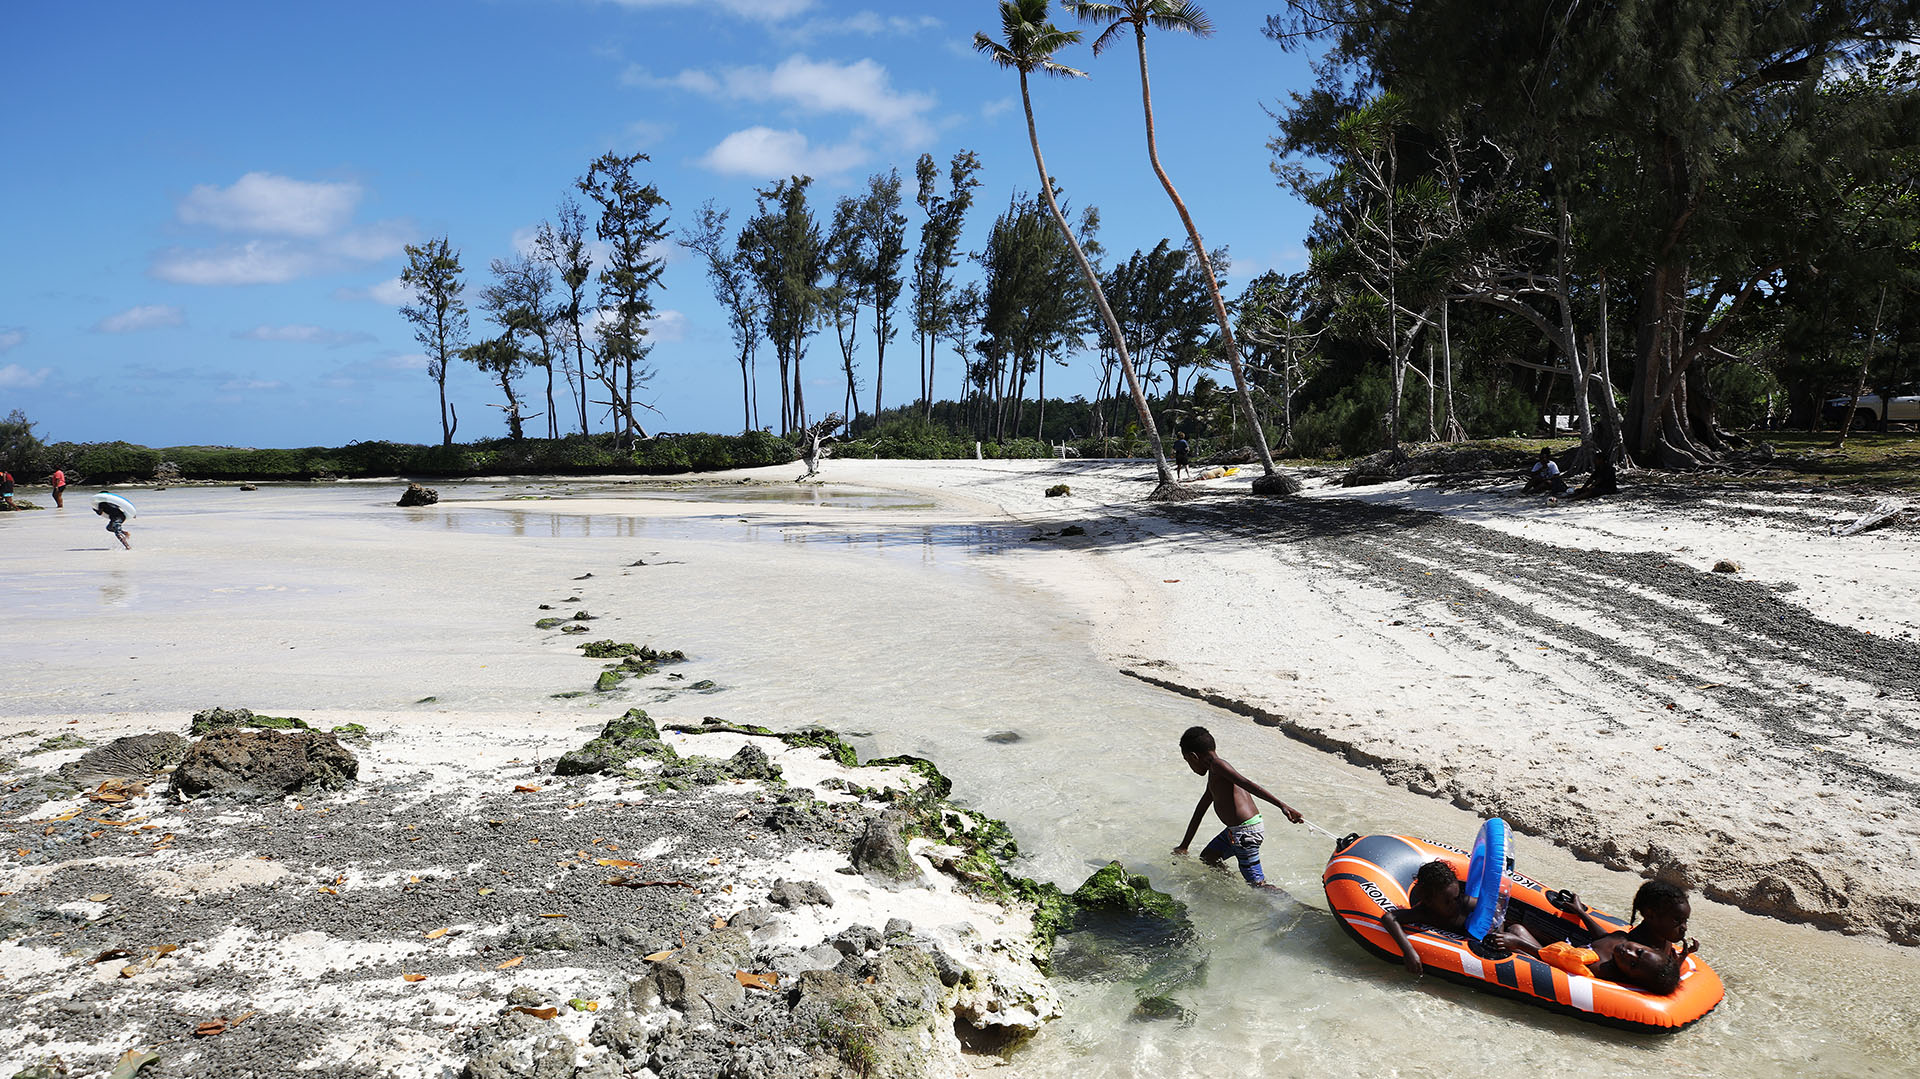 Vanuatu está amenazado por el aumento del nivel del mar. "Tuvimos que aprender a manejar nuestra insignificancia"dijo su presidente (Mario Tama/Getty Images)